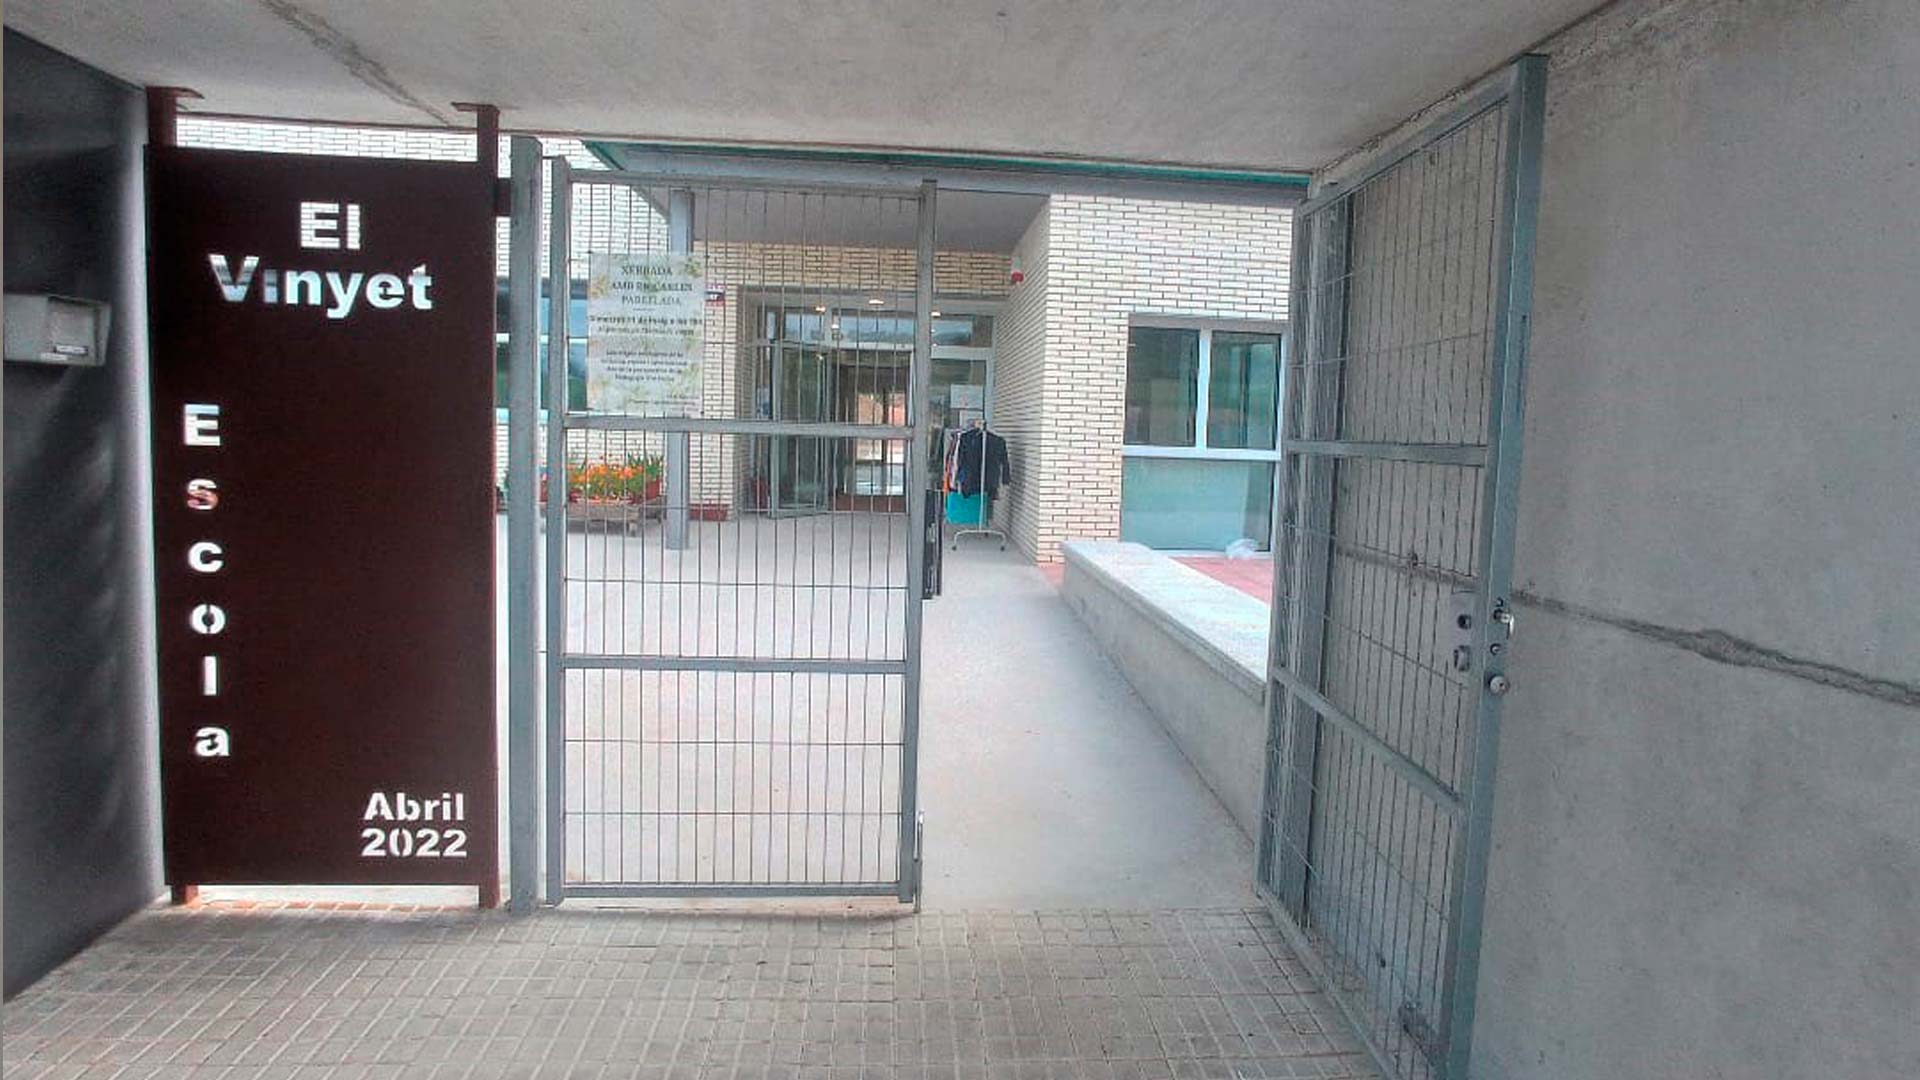 Escola El Vinyet (Solsona - Lleida)